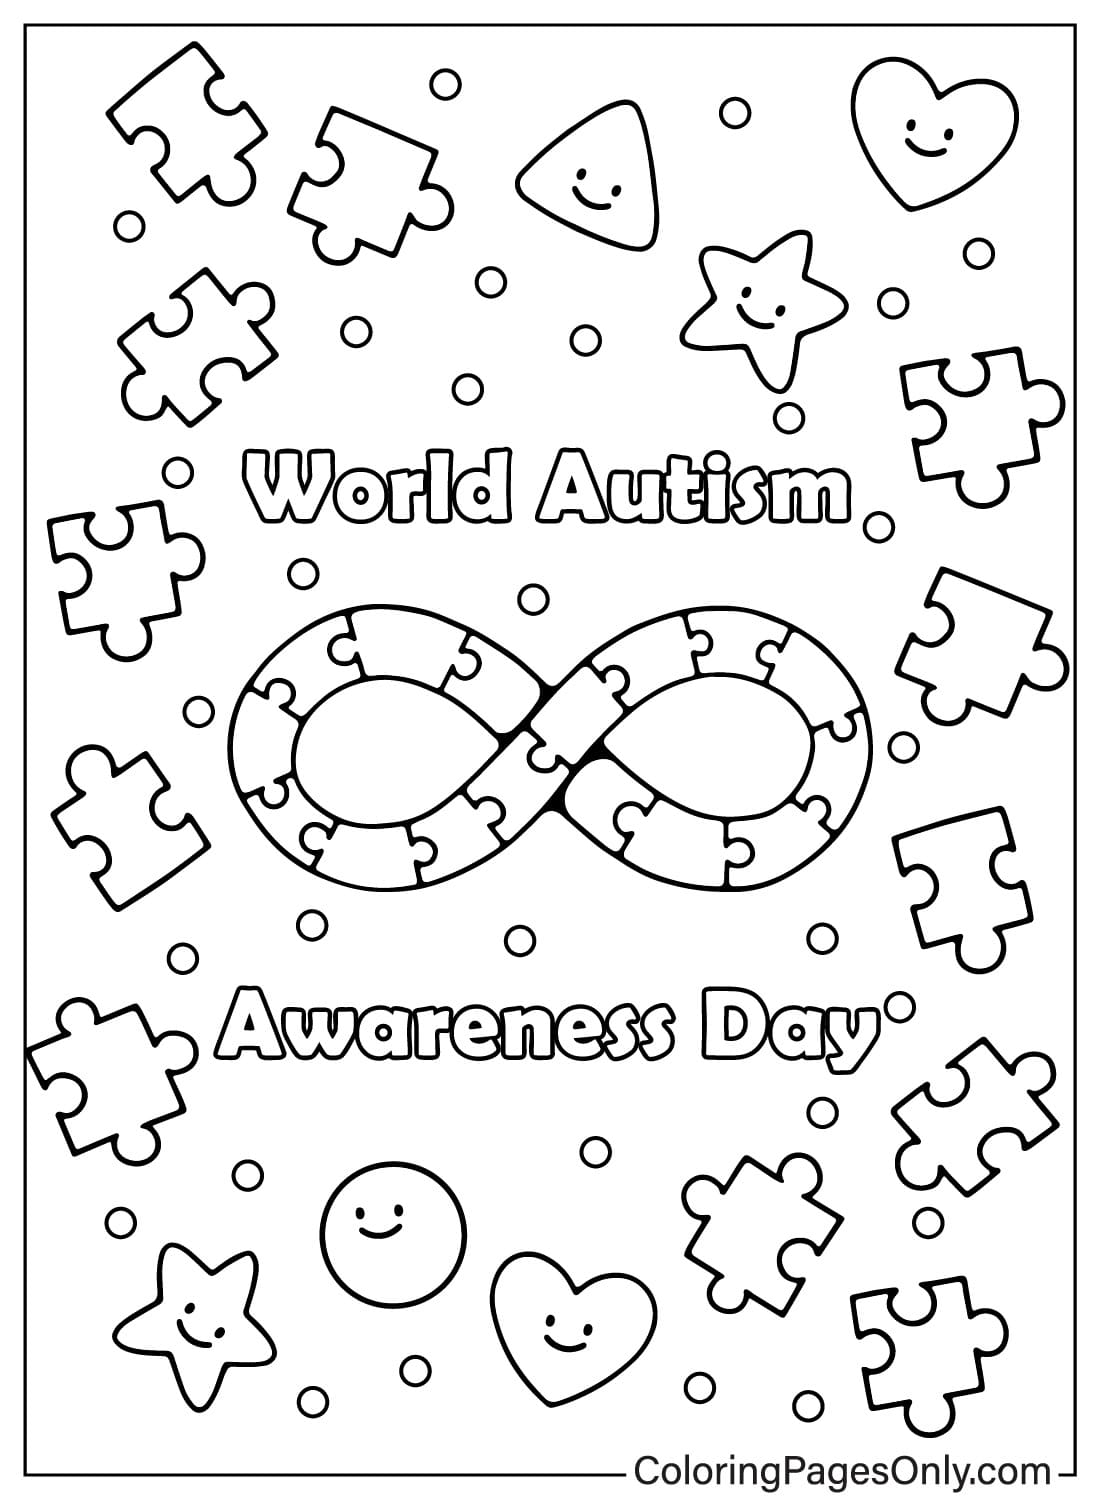 Páginas para colorear gratuitas de concientización sobre el autismo para niños y adultos del Día Mundial de Concientización sobre el Autismo